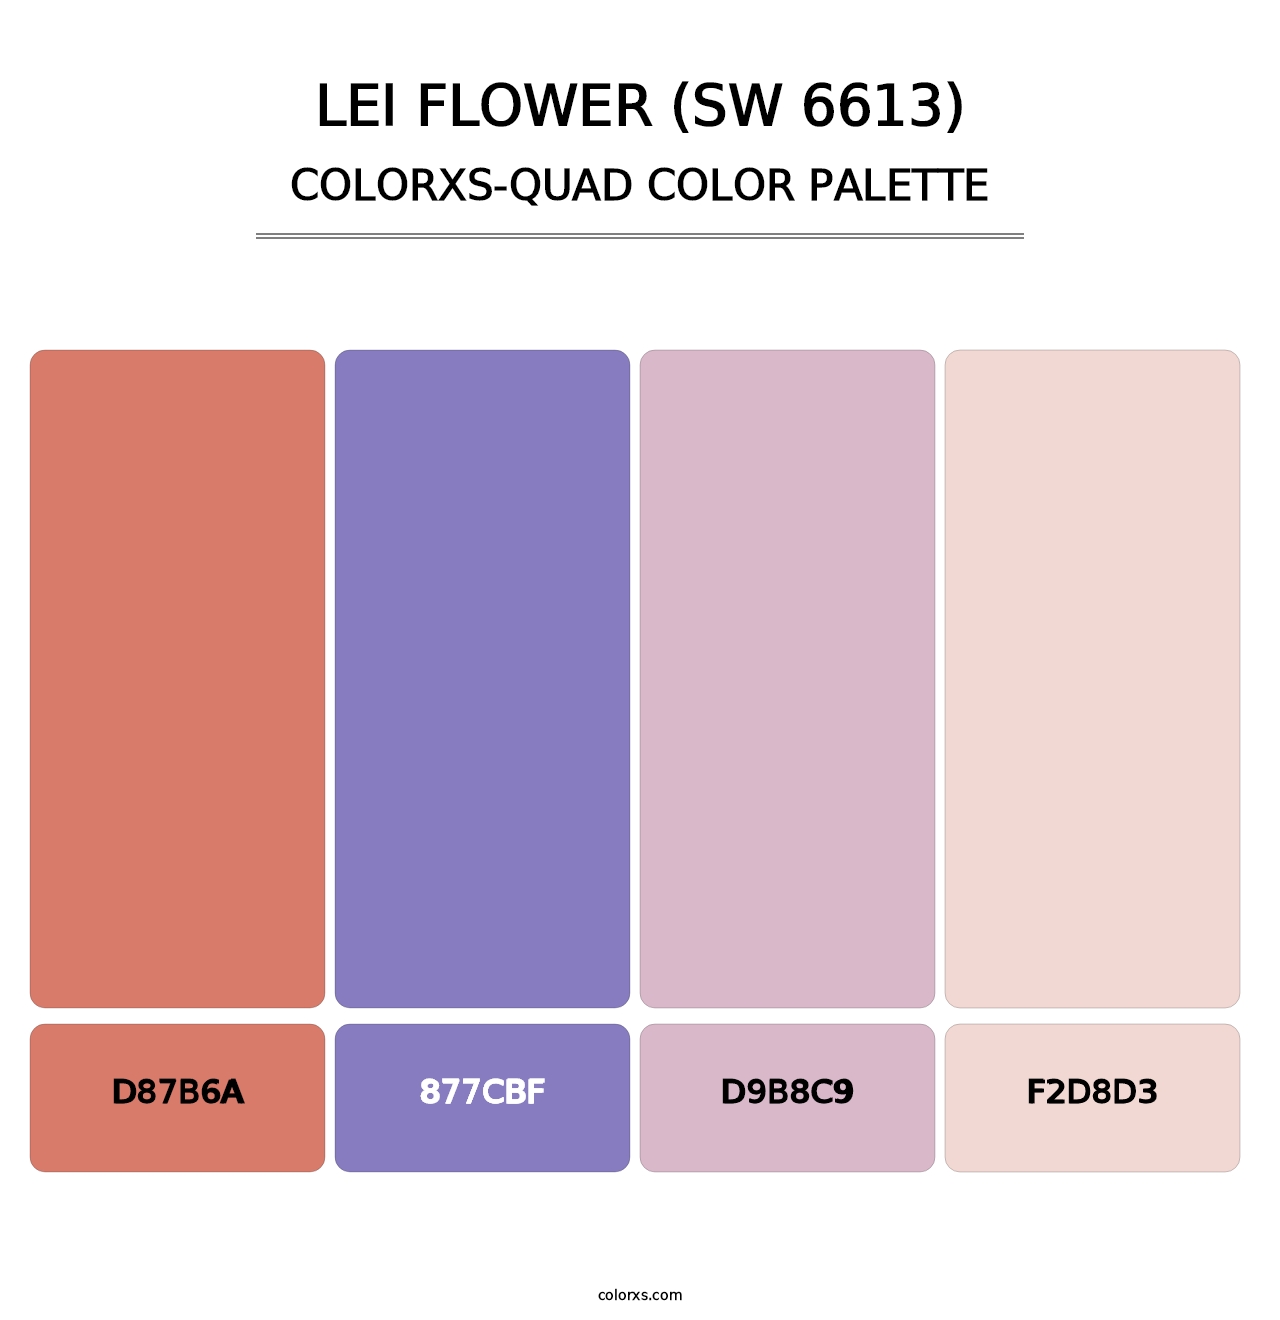 Lei Flower (SW 6613) - Colorxs Quad Palette